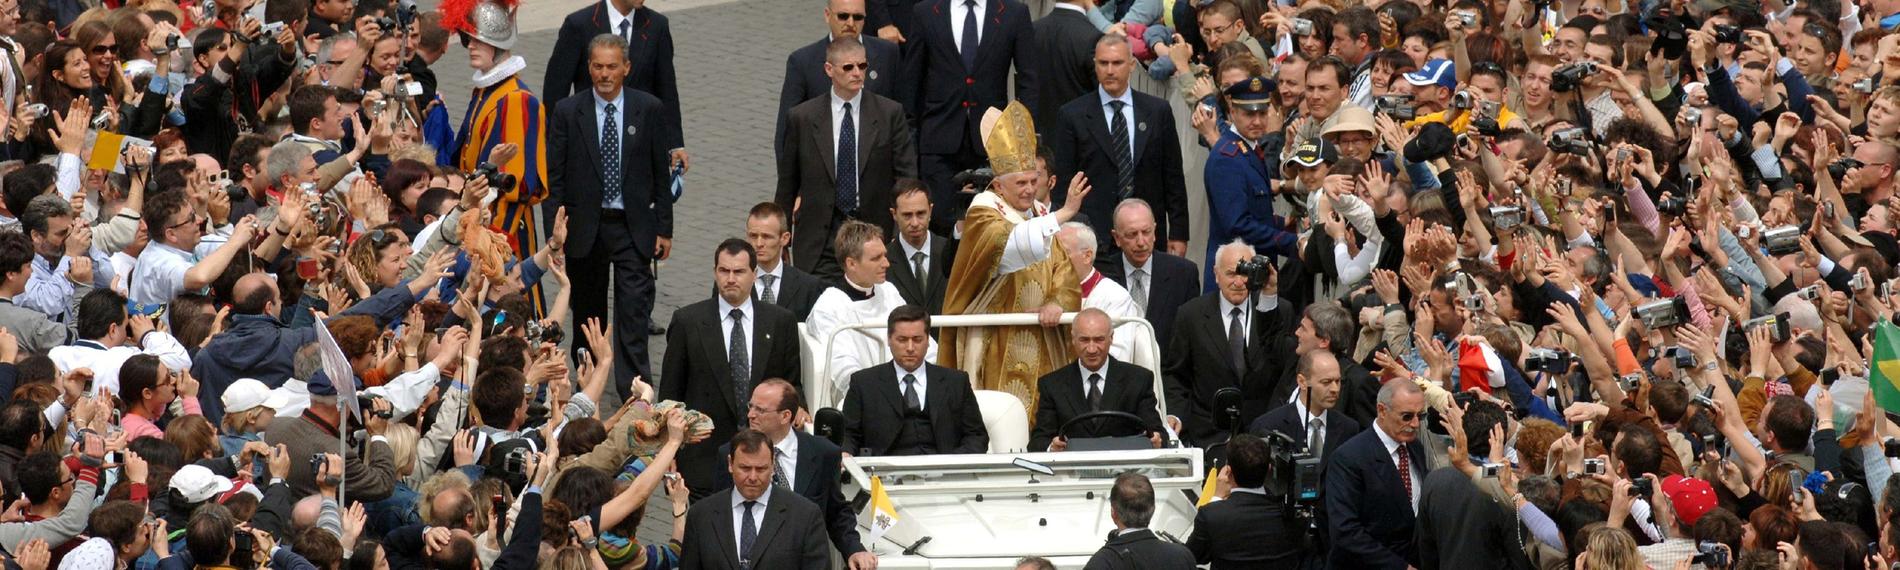 Papst Benedikt XVI. wird am Sonntag (24.04.2005) auf dem Papamobil durch die Menge über den Petersplatz am Vatikan gefahren.